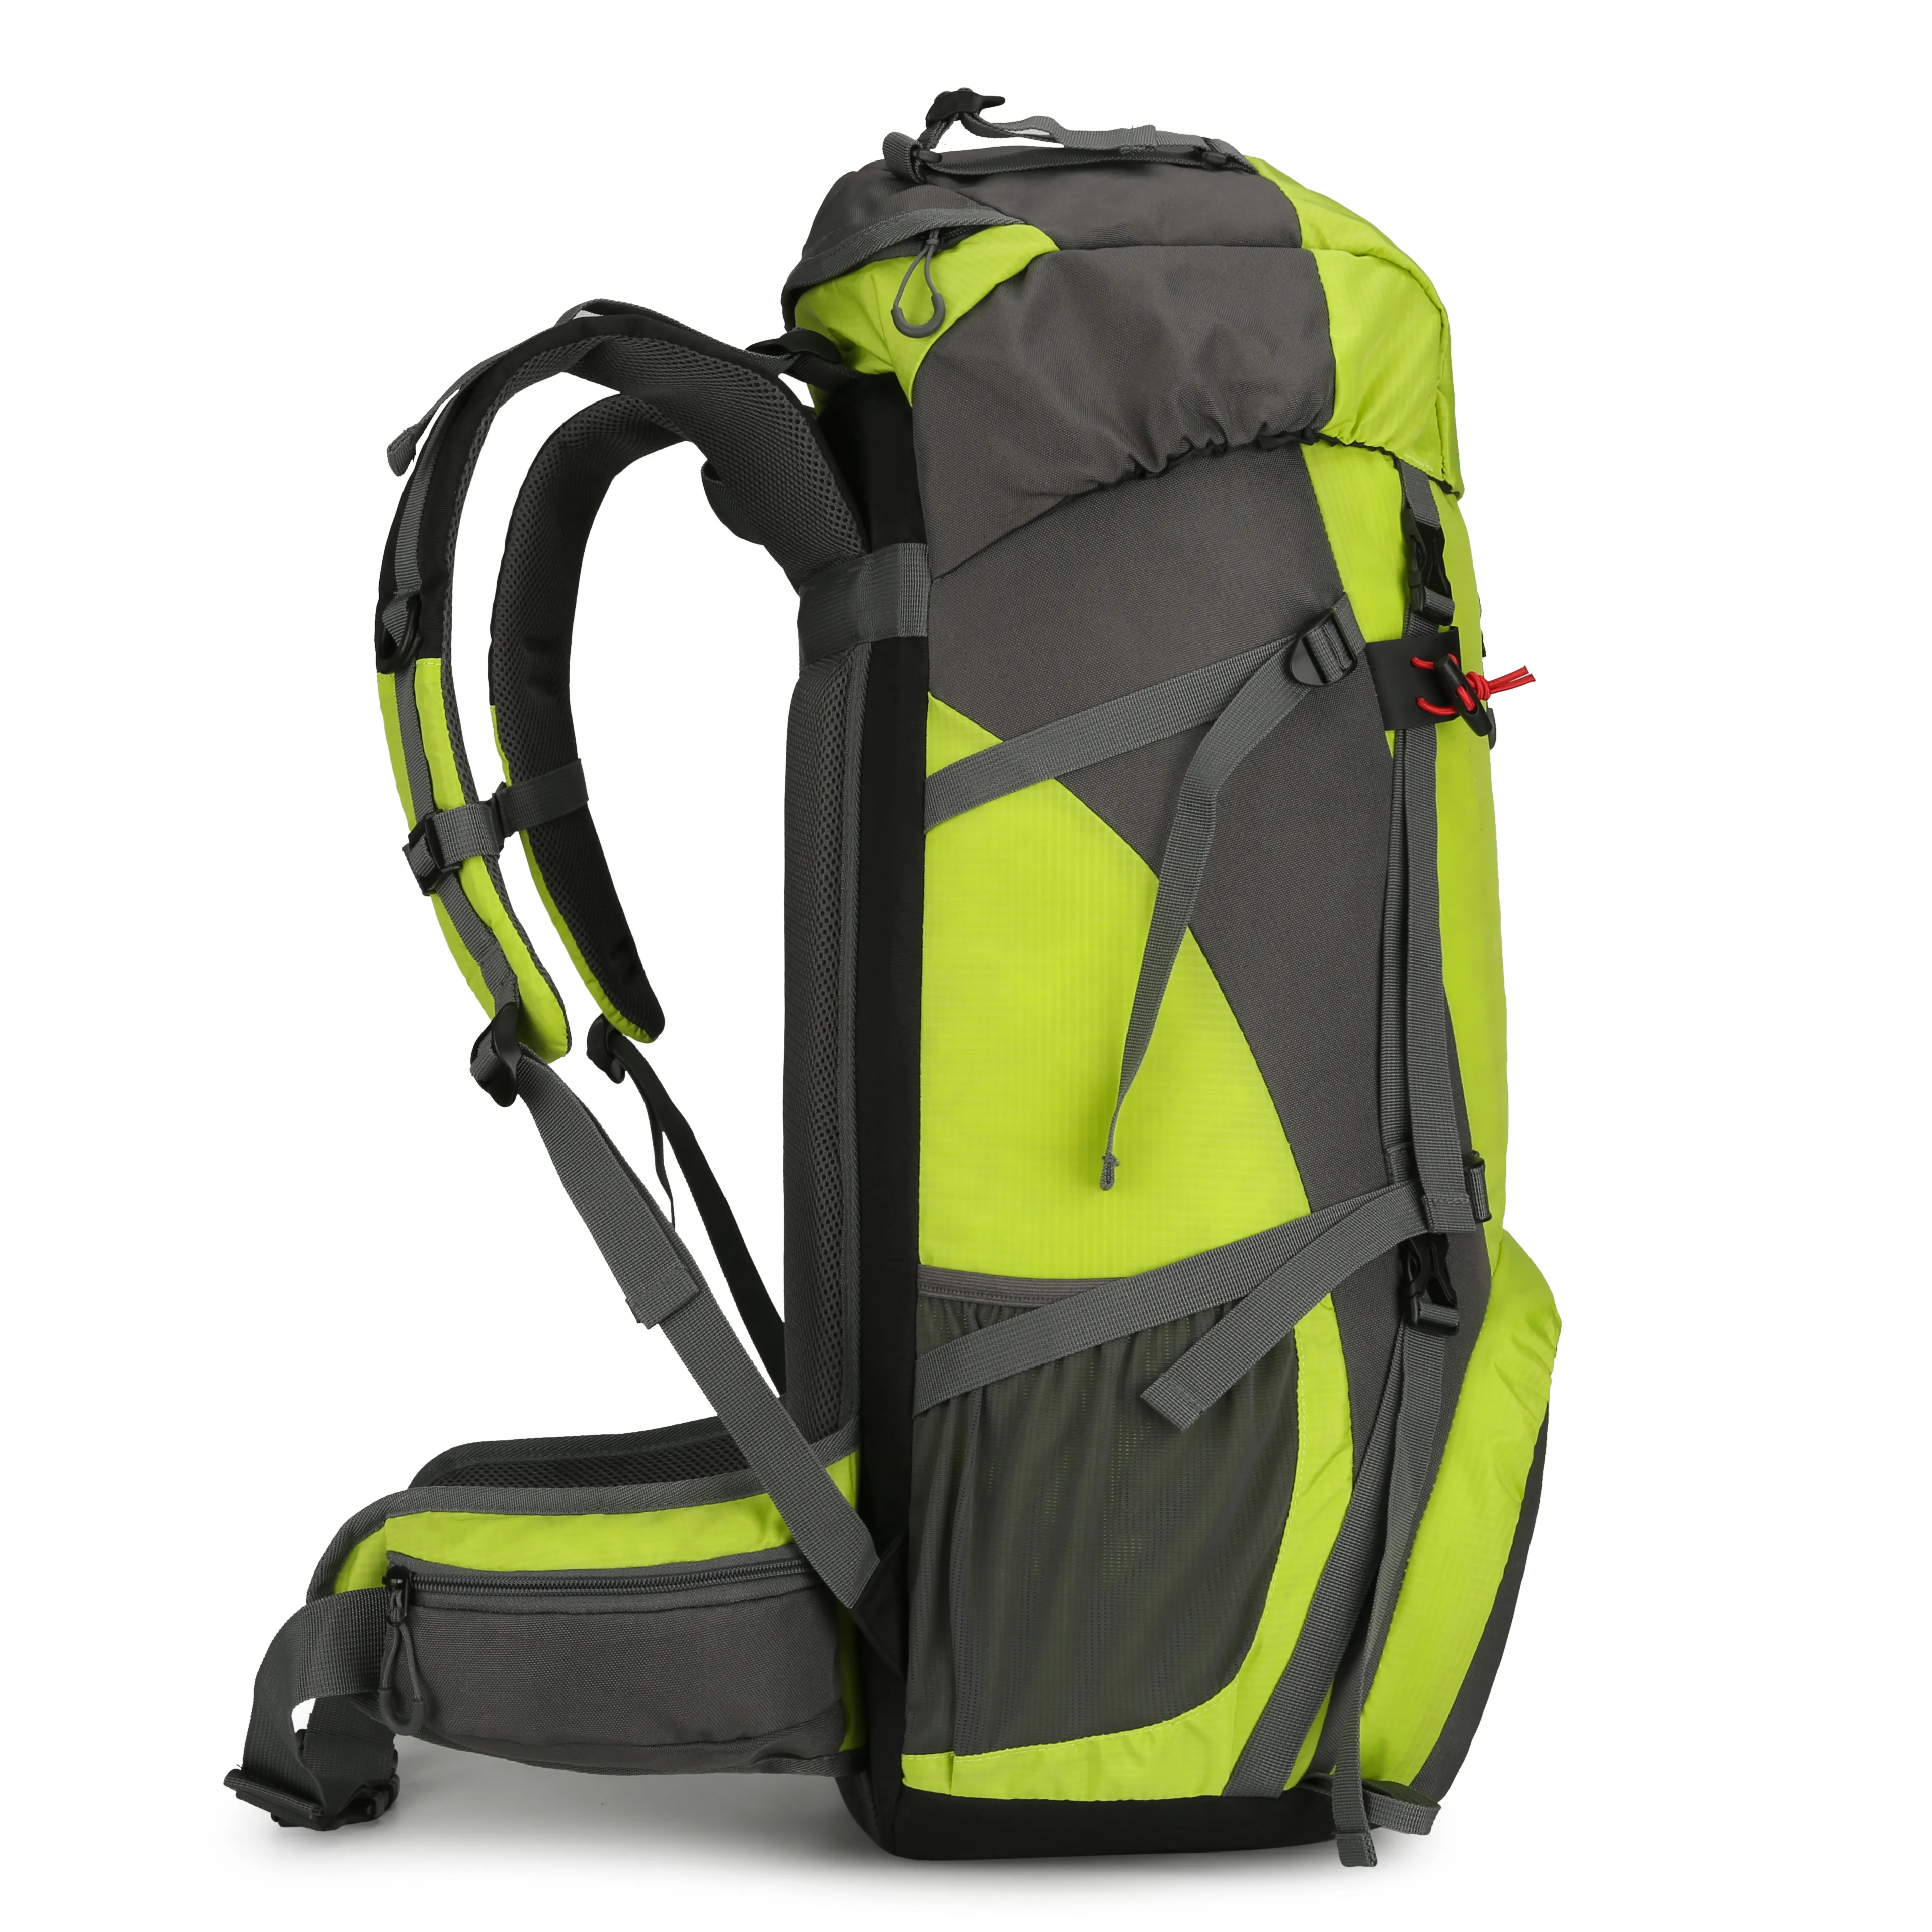 Mountain Land outdoor hiking bag waterproof travel trekking camping rucksack hiking backpack